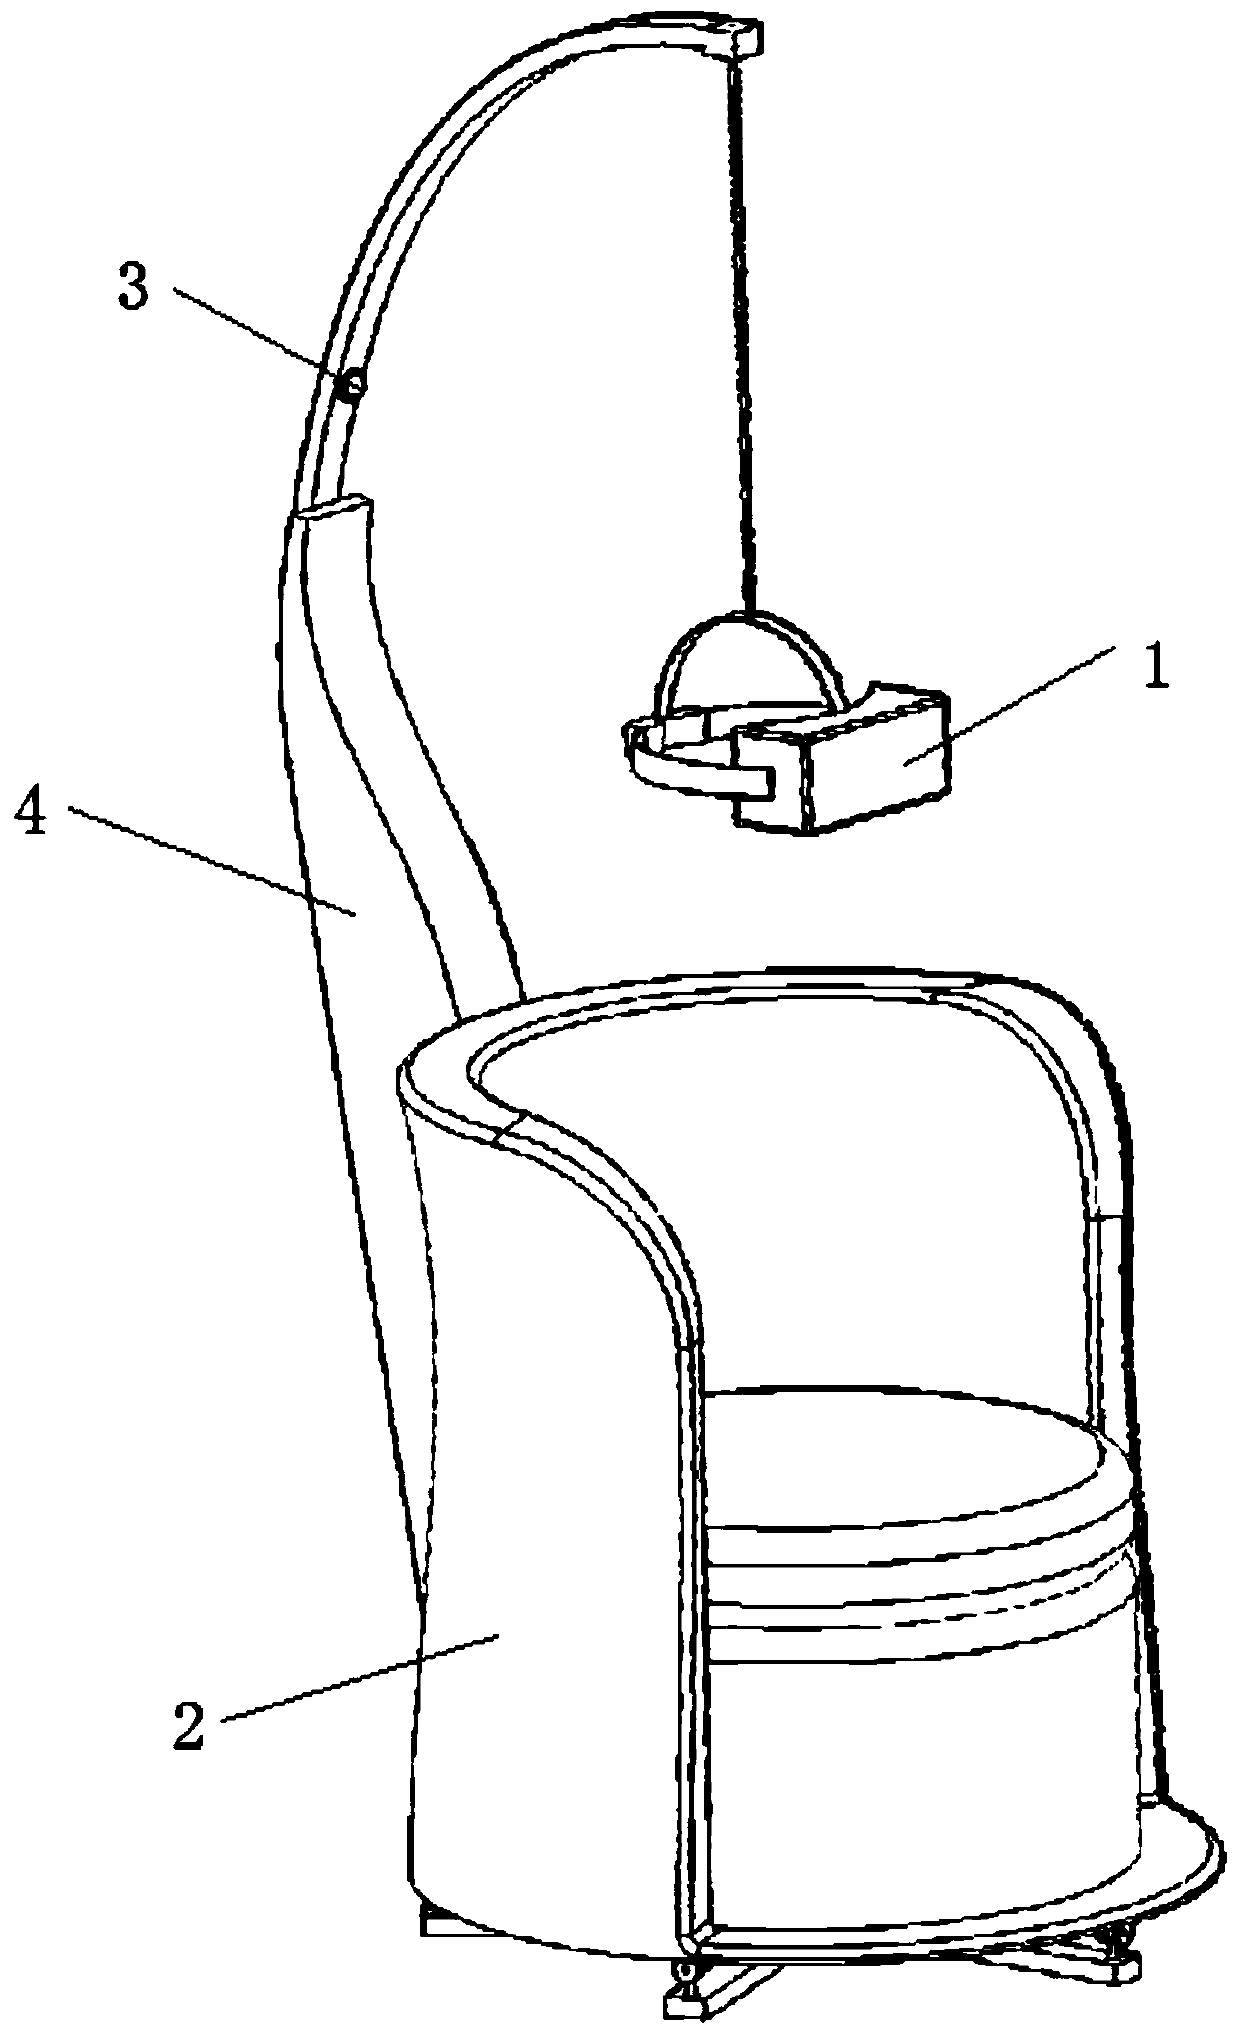 VR helmet positioning method suitable for rotating platform